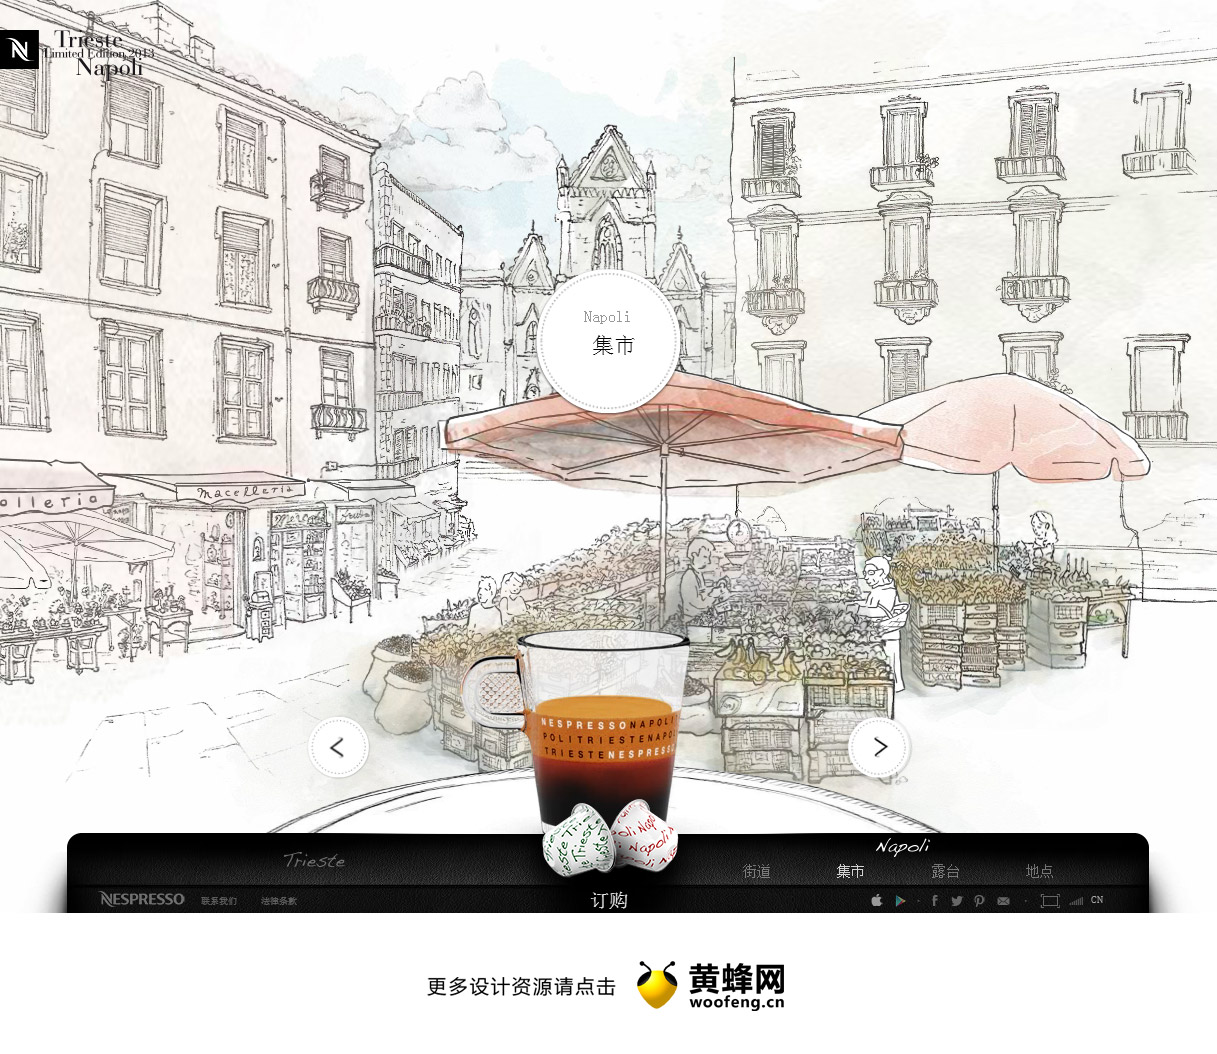 的里雅斯特和拿波里限量版咖啡，来源自黄蜂网https://woofeng.cn/web/